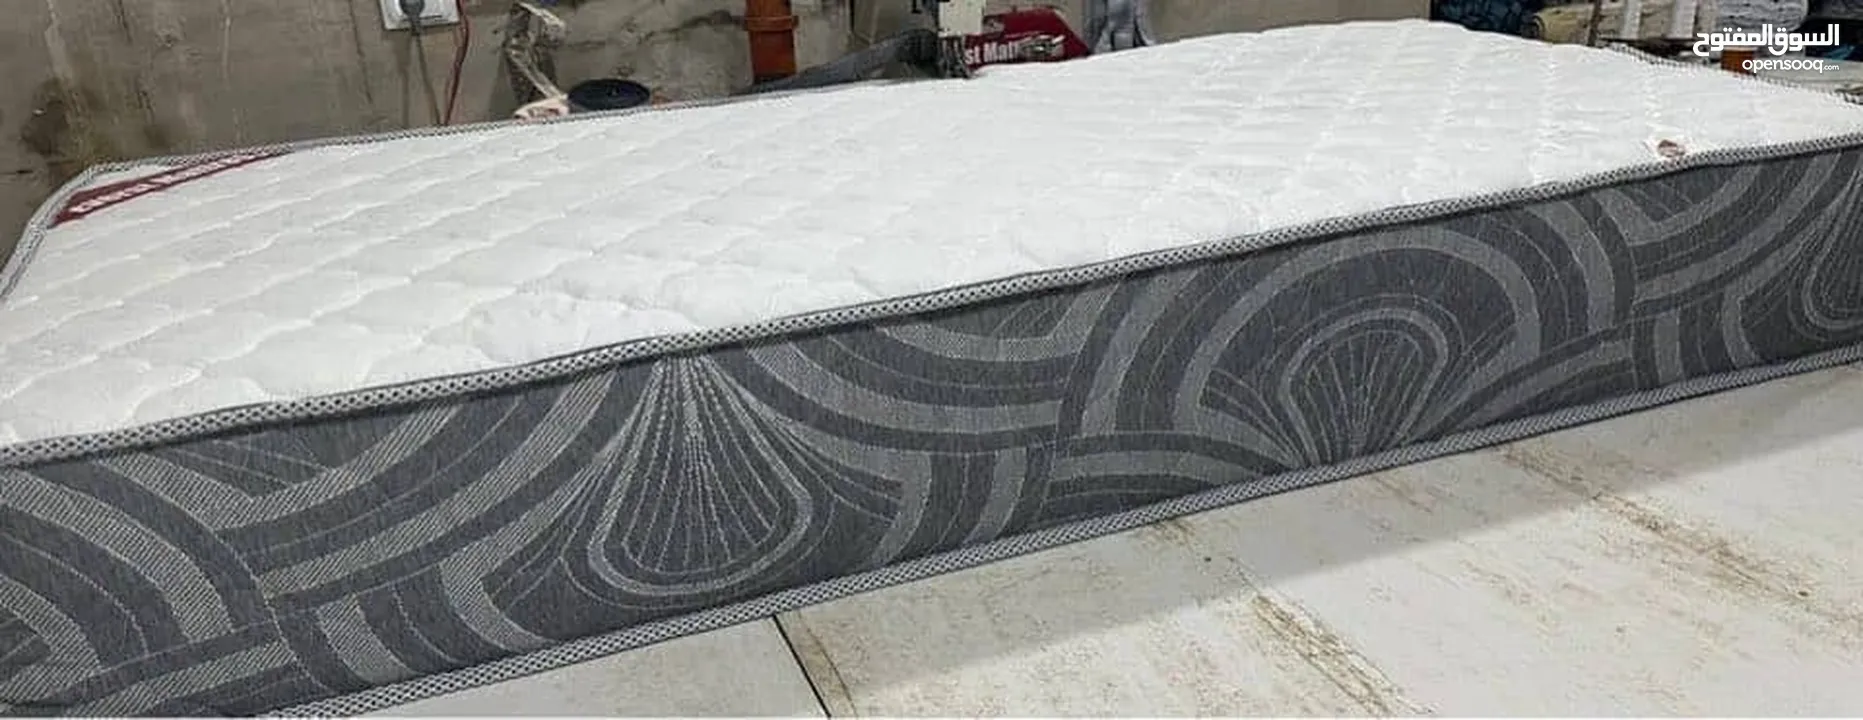 فرشة النوم الصحيه Micronap mattress